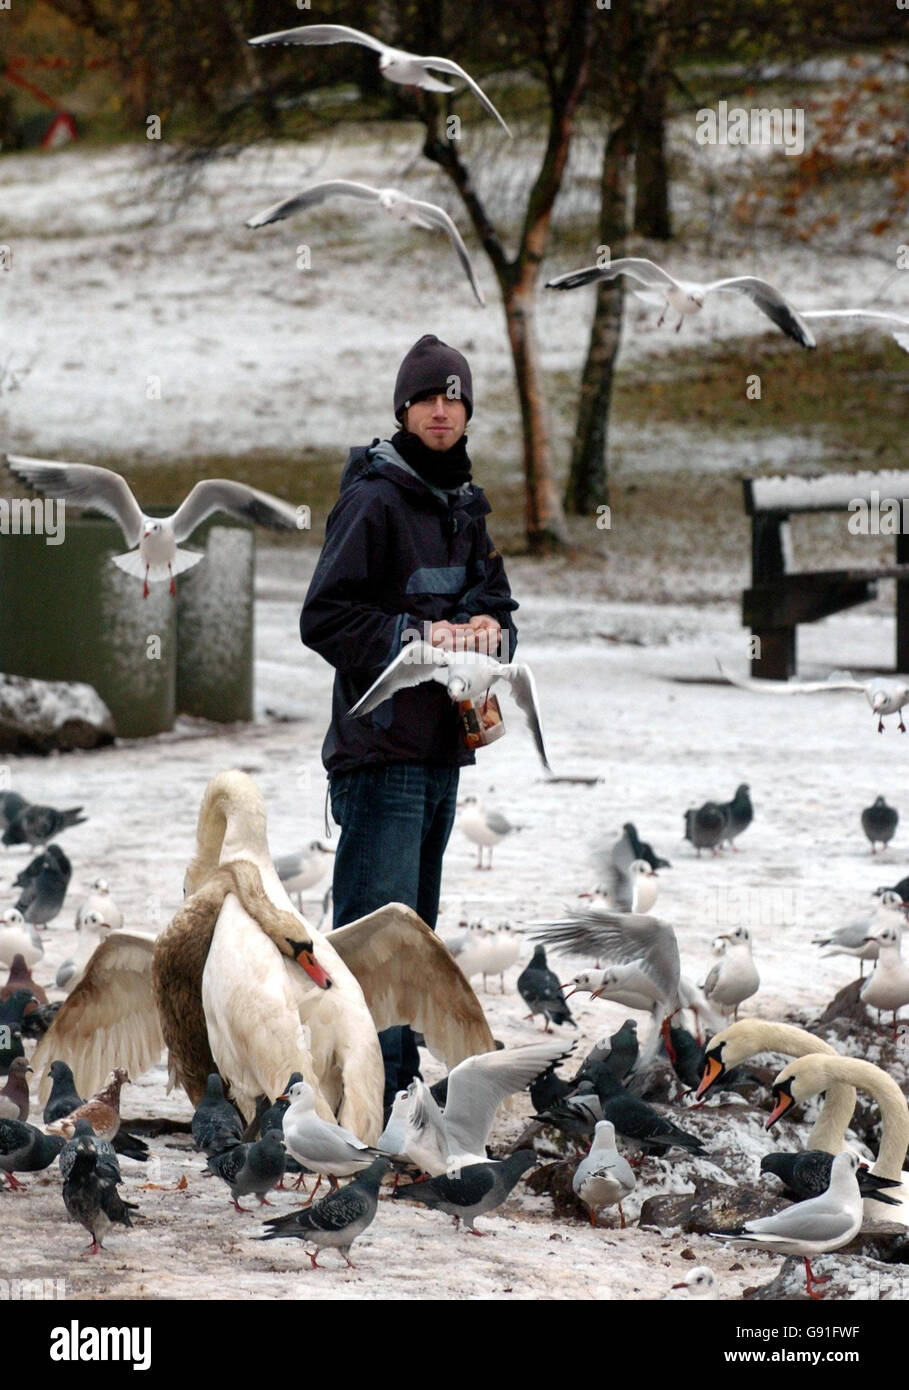 Il diciannove anni Simon Waddell alimenta gli uccelli e i cigni di Holyrood Park, Edimburgo, venerdì 25 novembre 2005, come la neve è caduta durante la notte. Parti della Scozia, dell'Inghilterra e del Galles sono state oggi rinforzate per più disgregazione mentre le docce invernali hanno continuato. Ieri, dopo la prima nevicata dell'inverno, le strade sono state chiuse e gli studenti sono stati rimessi a casa nel nord della Scozia. Vedi PA Story WEATHER Snow. PREMERE ASSOCIAZIONE foto. Il credito fotografico dovrebbe essere: Danny Lawson/PA Foto Stock